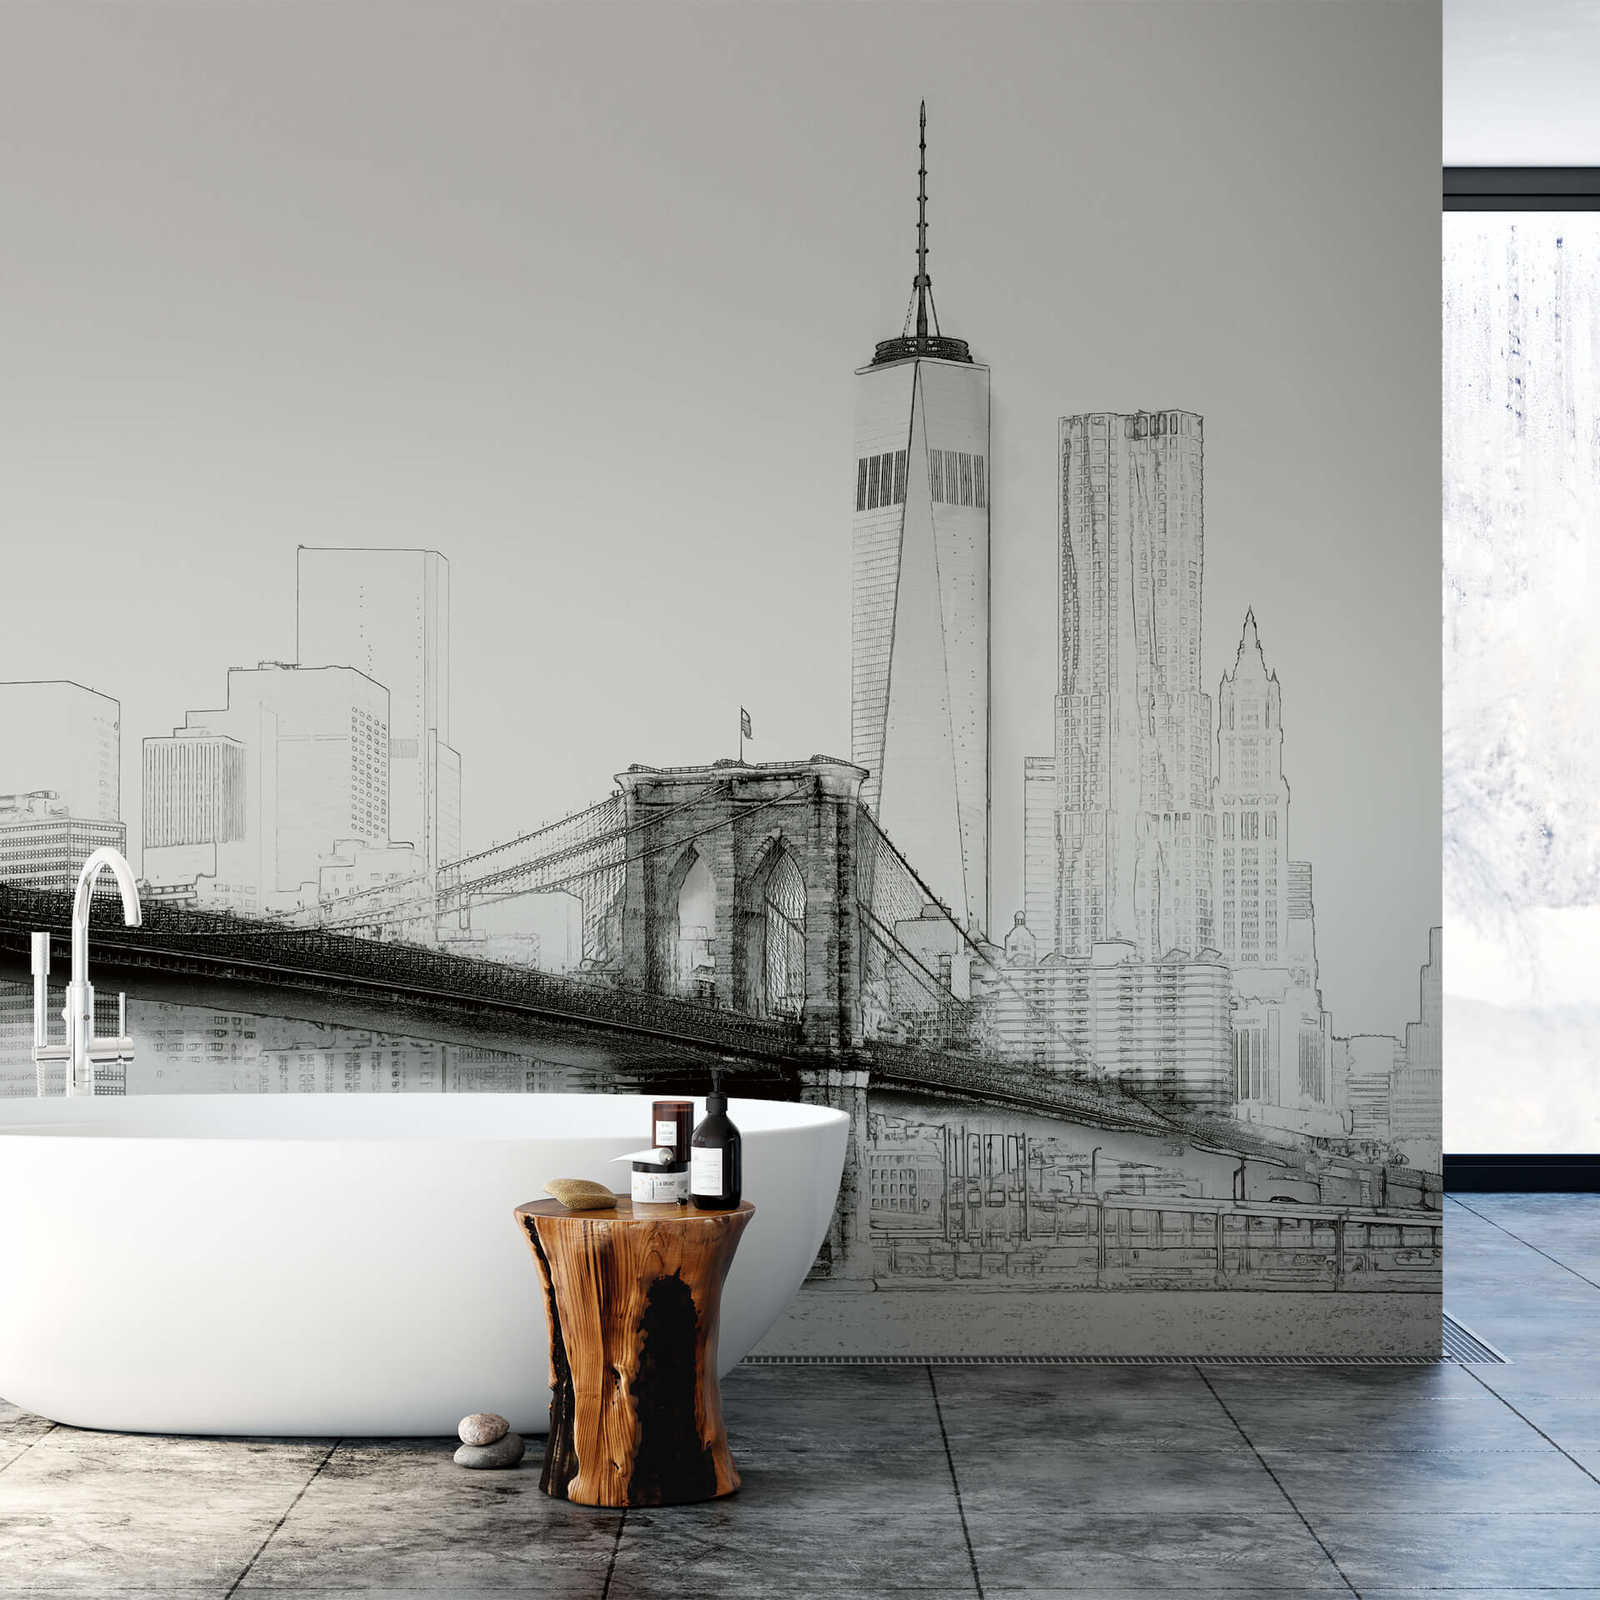             Carta da parati fotografica in bianco e nero Schizzo di New York City Skyline
        